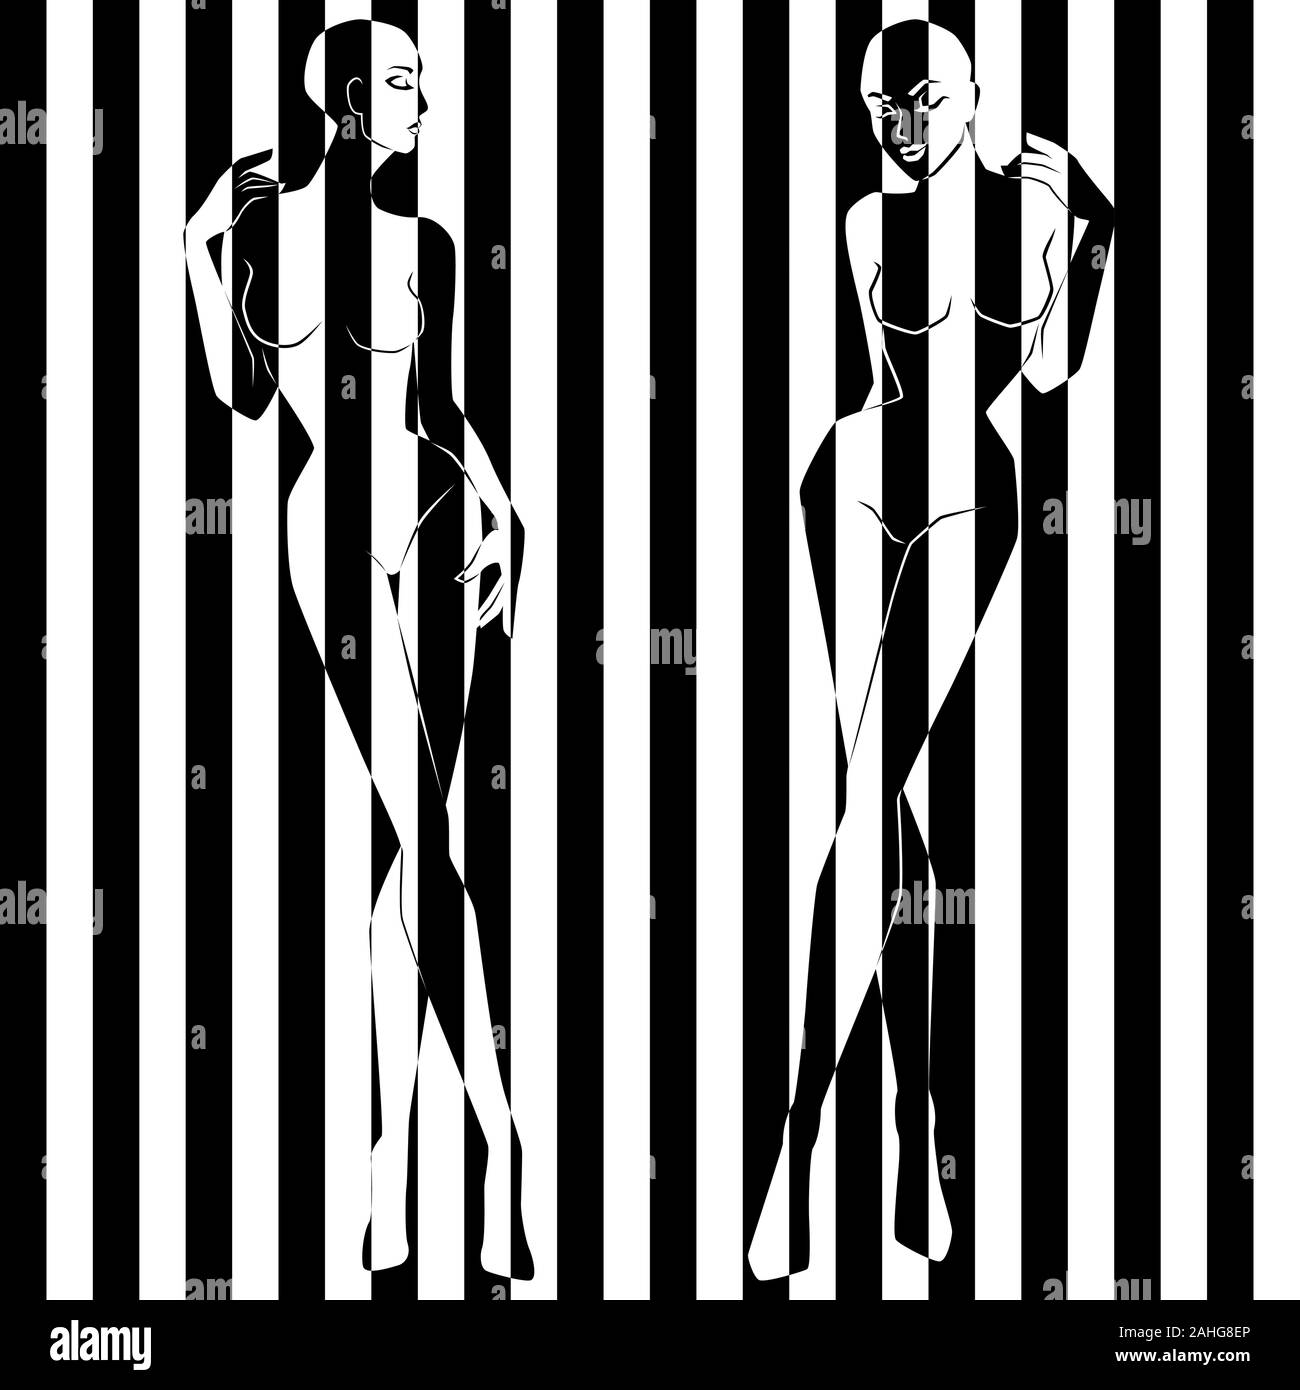 Zwei elegante Frauen in Abbildung in Breite schwarze und weiße Streifen geteilt, Pseudo-3D-Optik, negative und positive begriffliche Ausdruck Stock Vektor